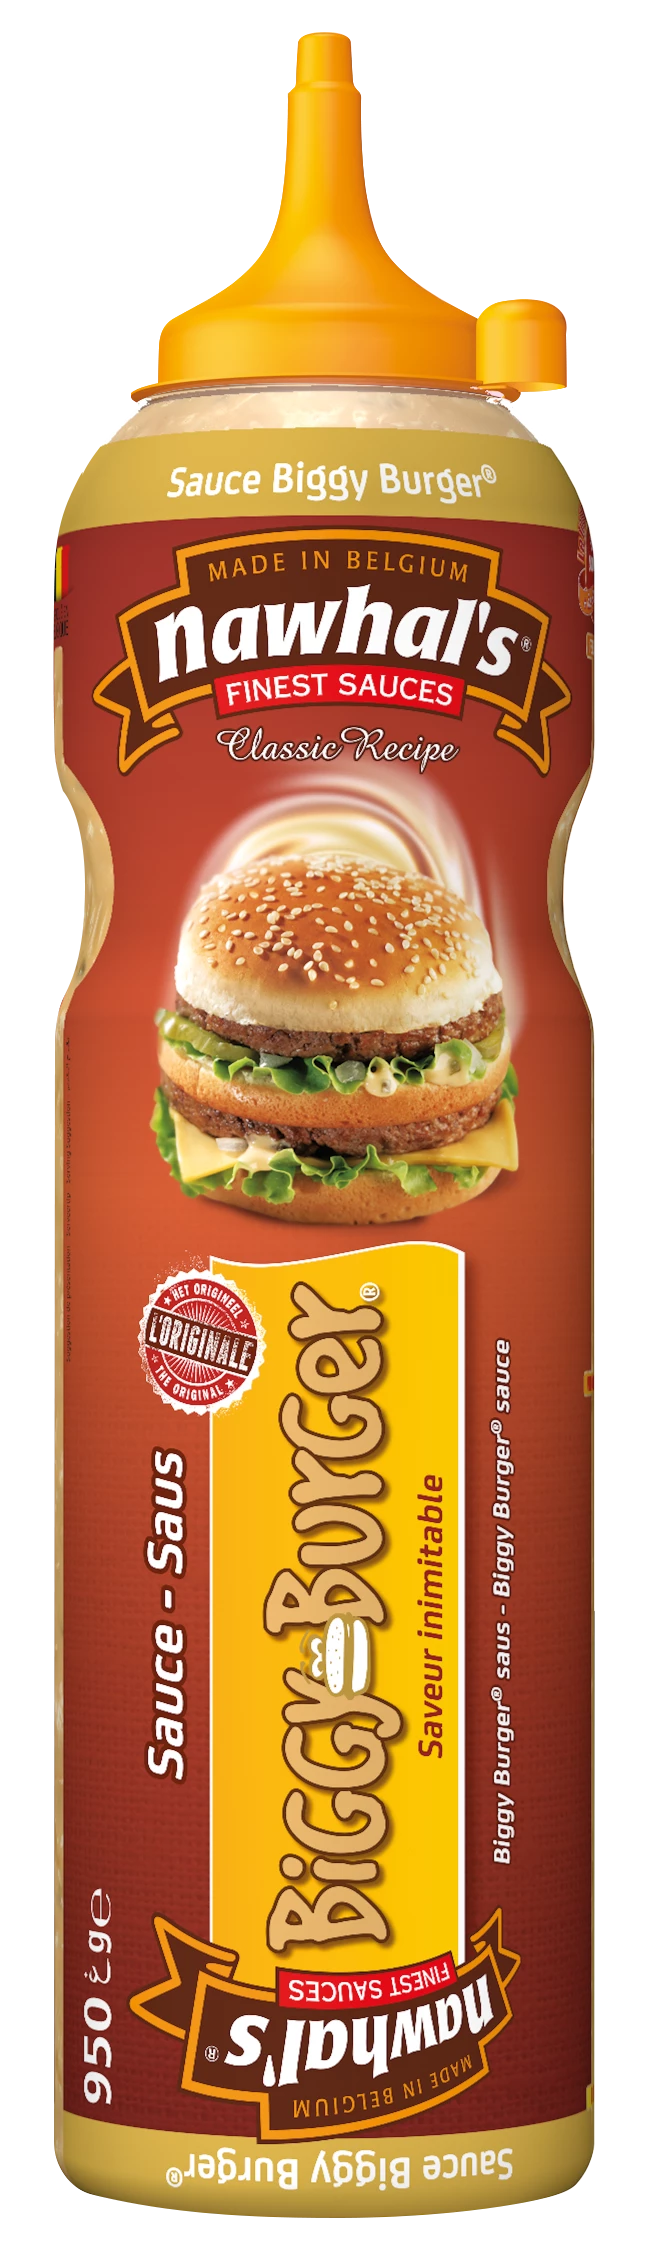 Соус Biggy Burger 950гр/950мл - NAWHAL'S